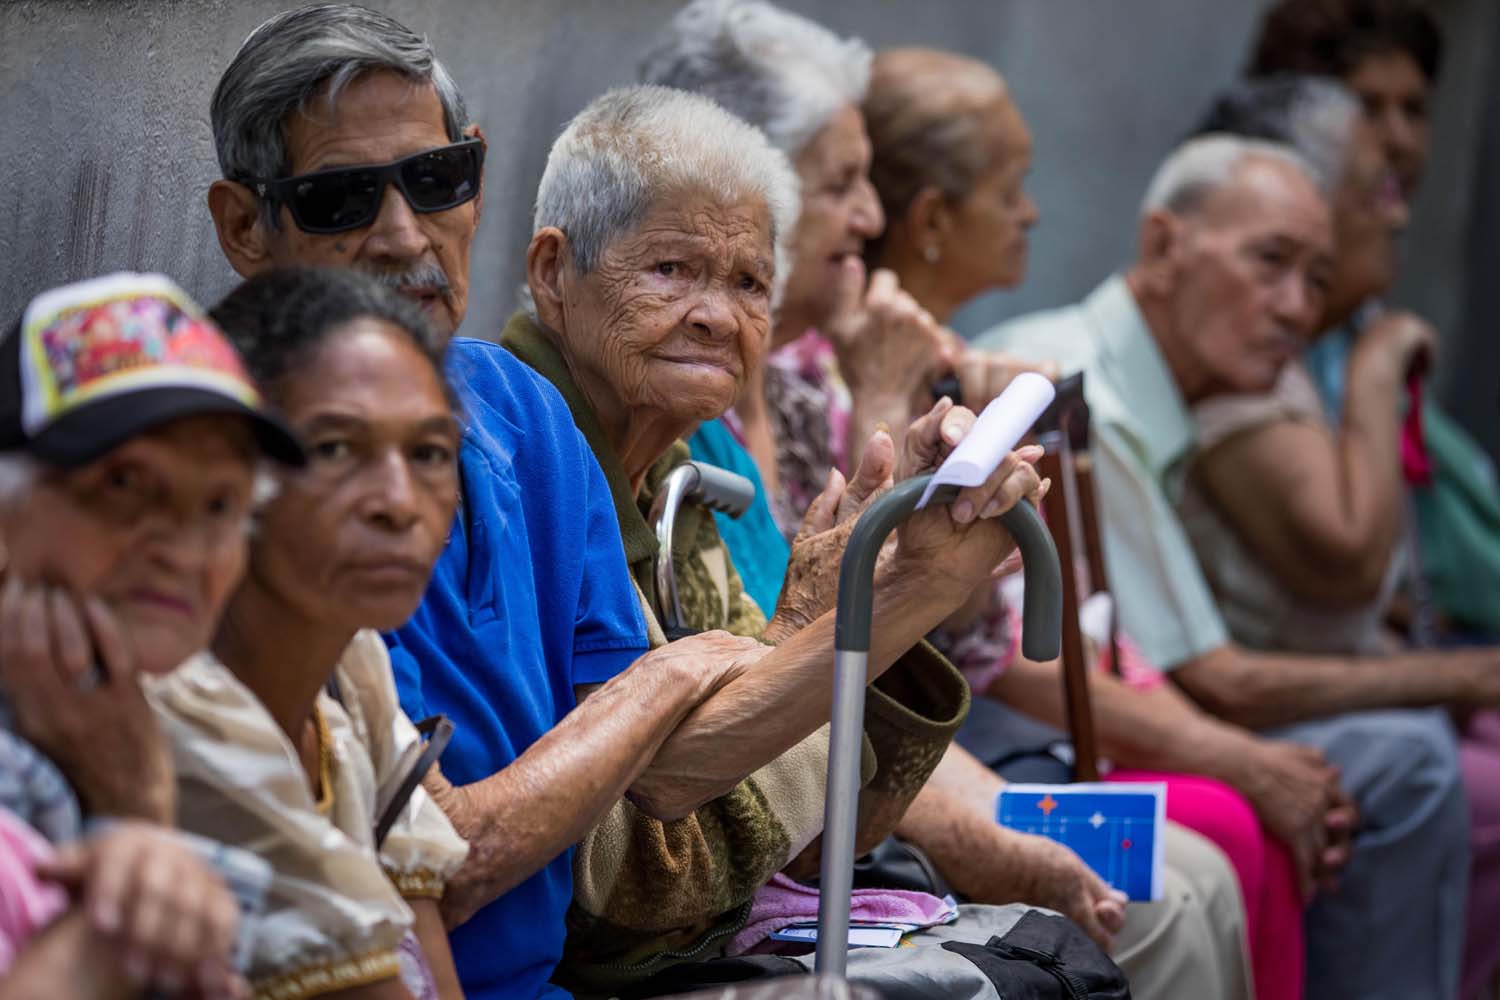 El drama y la humillación que enfrentan los pensionados venezolanos